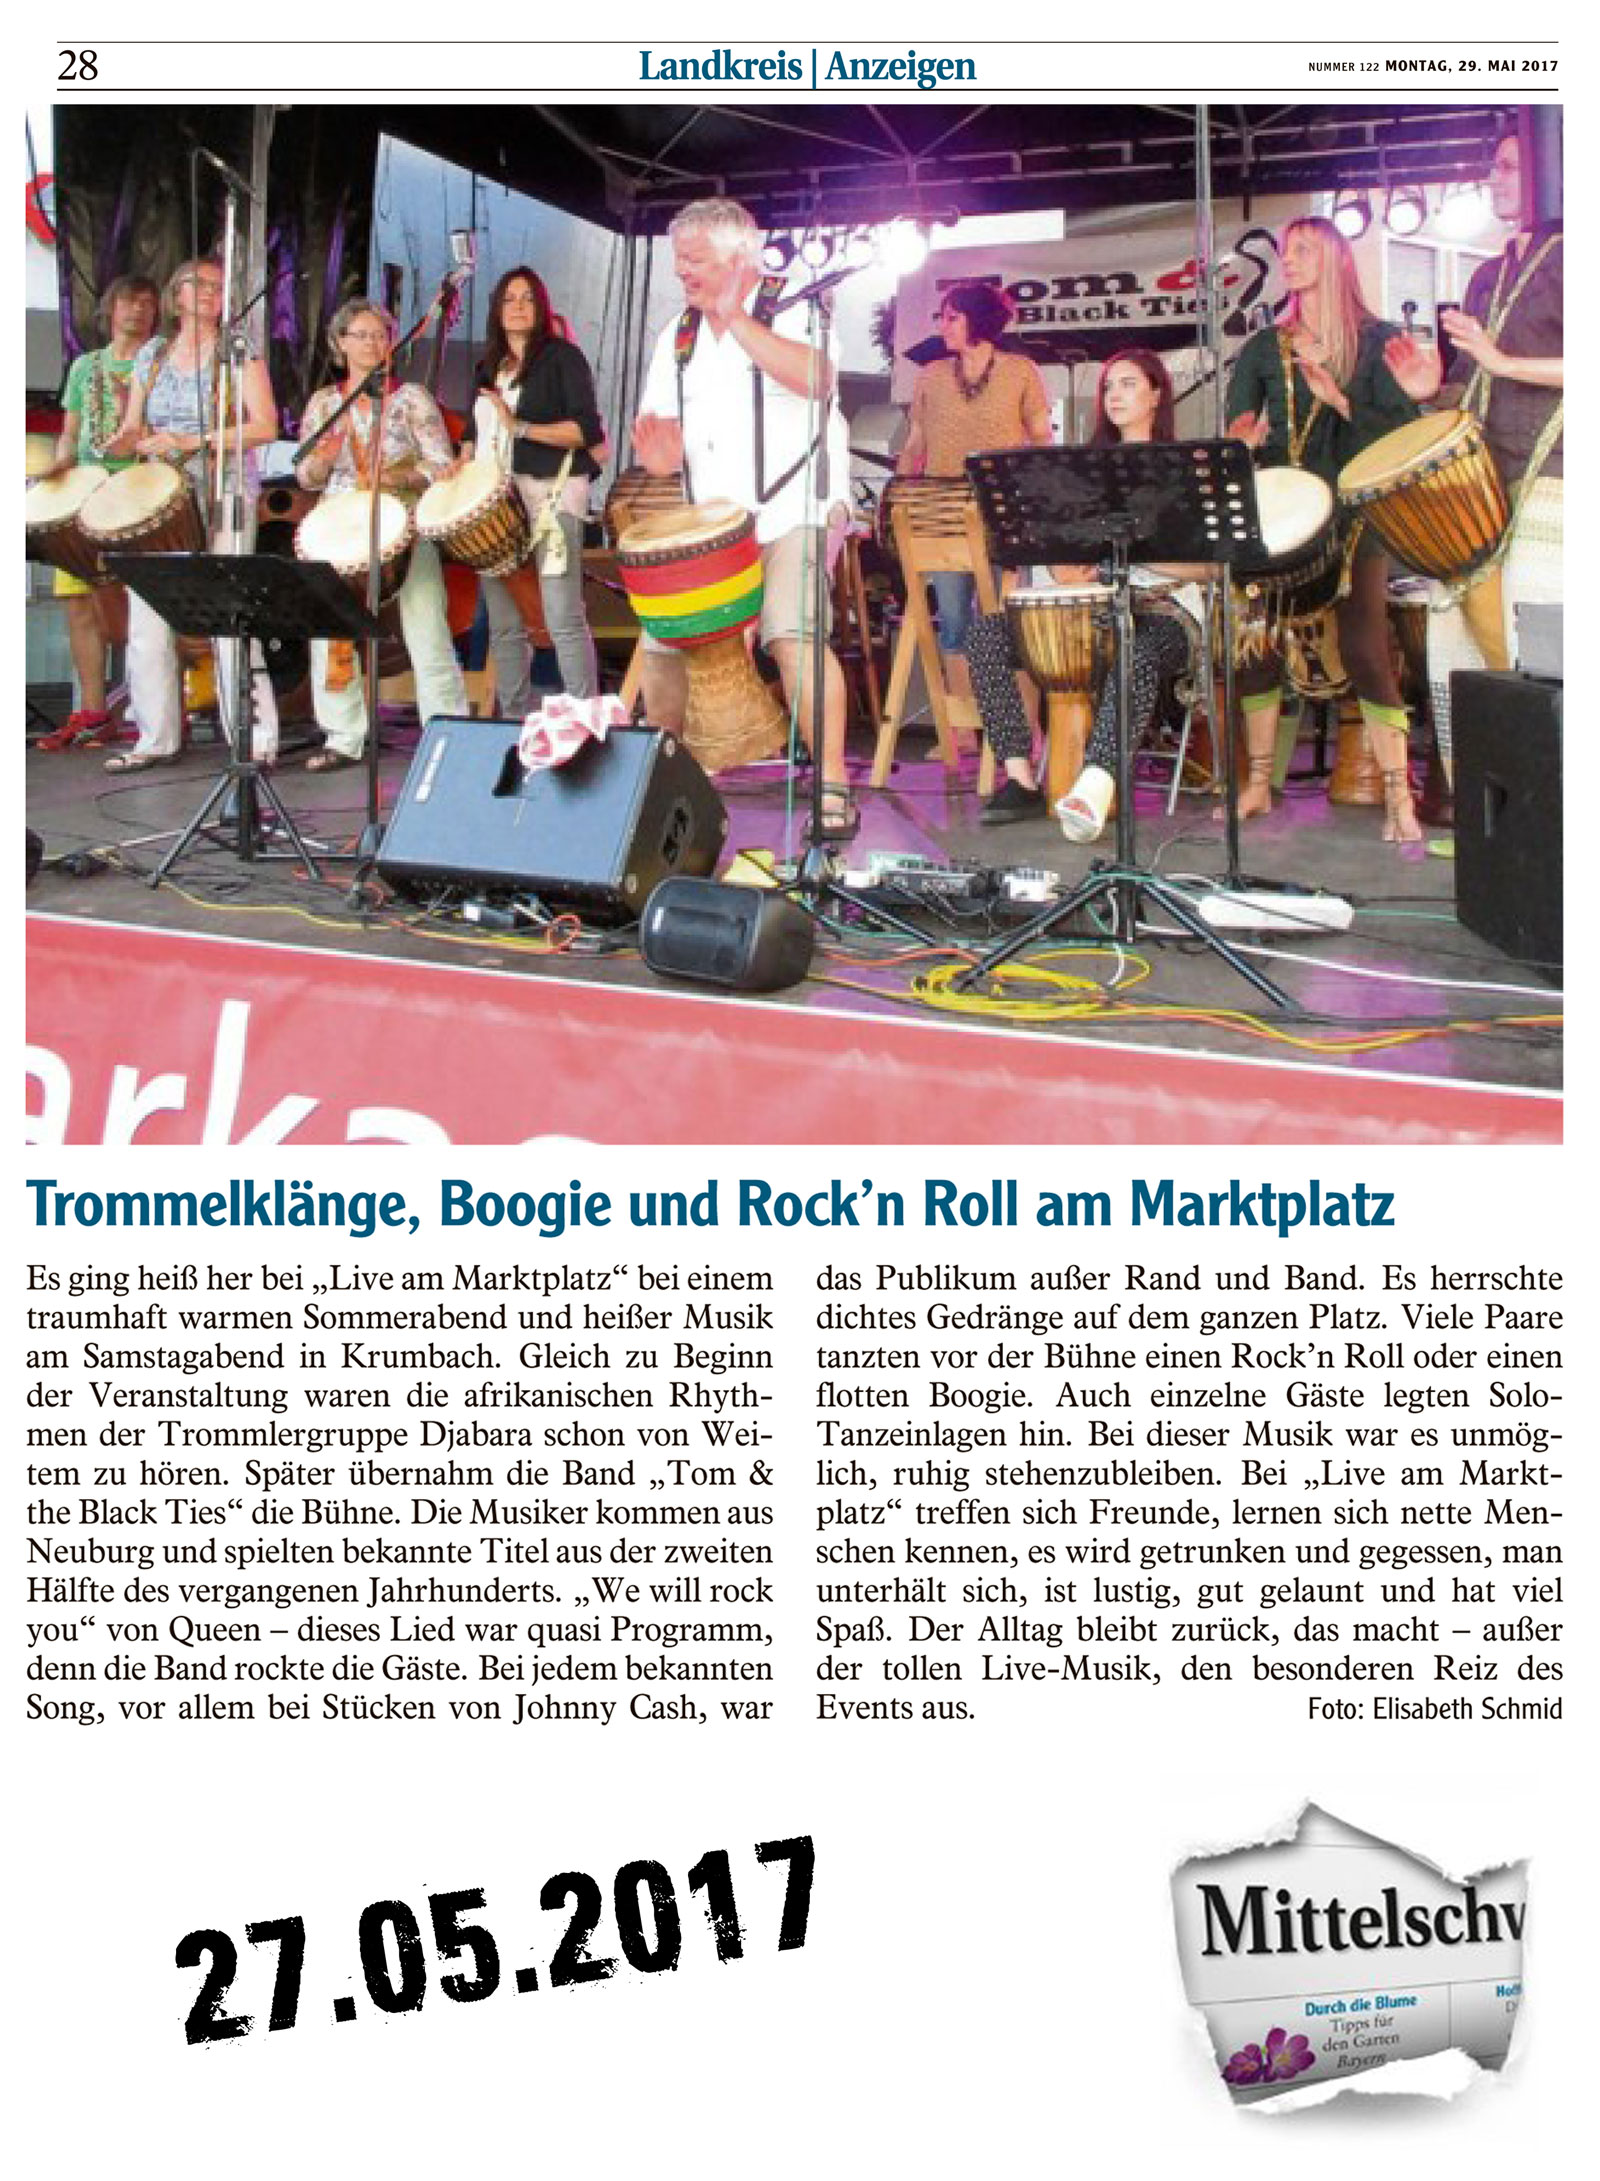 Djabara und Tom & the Black Ties bei live am Marktplatz 2017 05 20 Mittelschwaebische Nachrichten